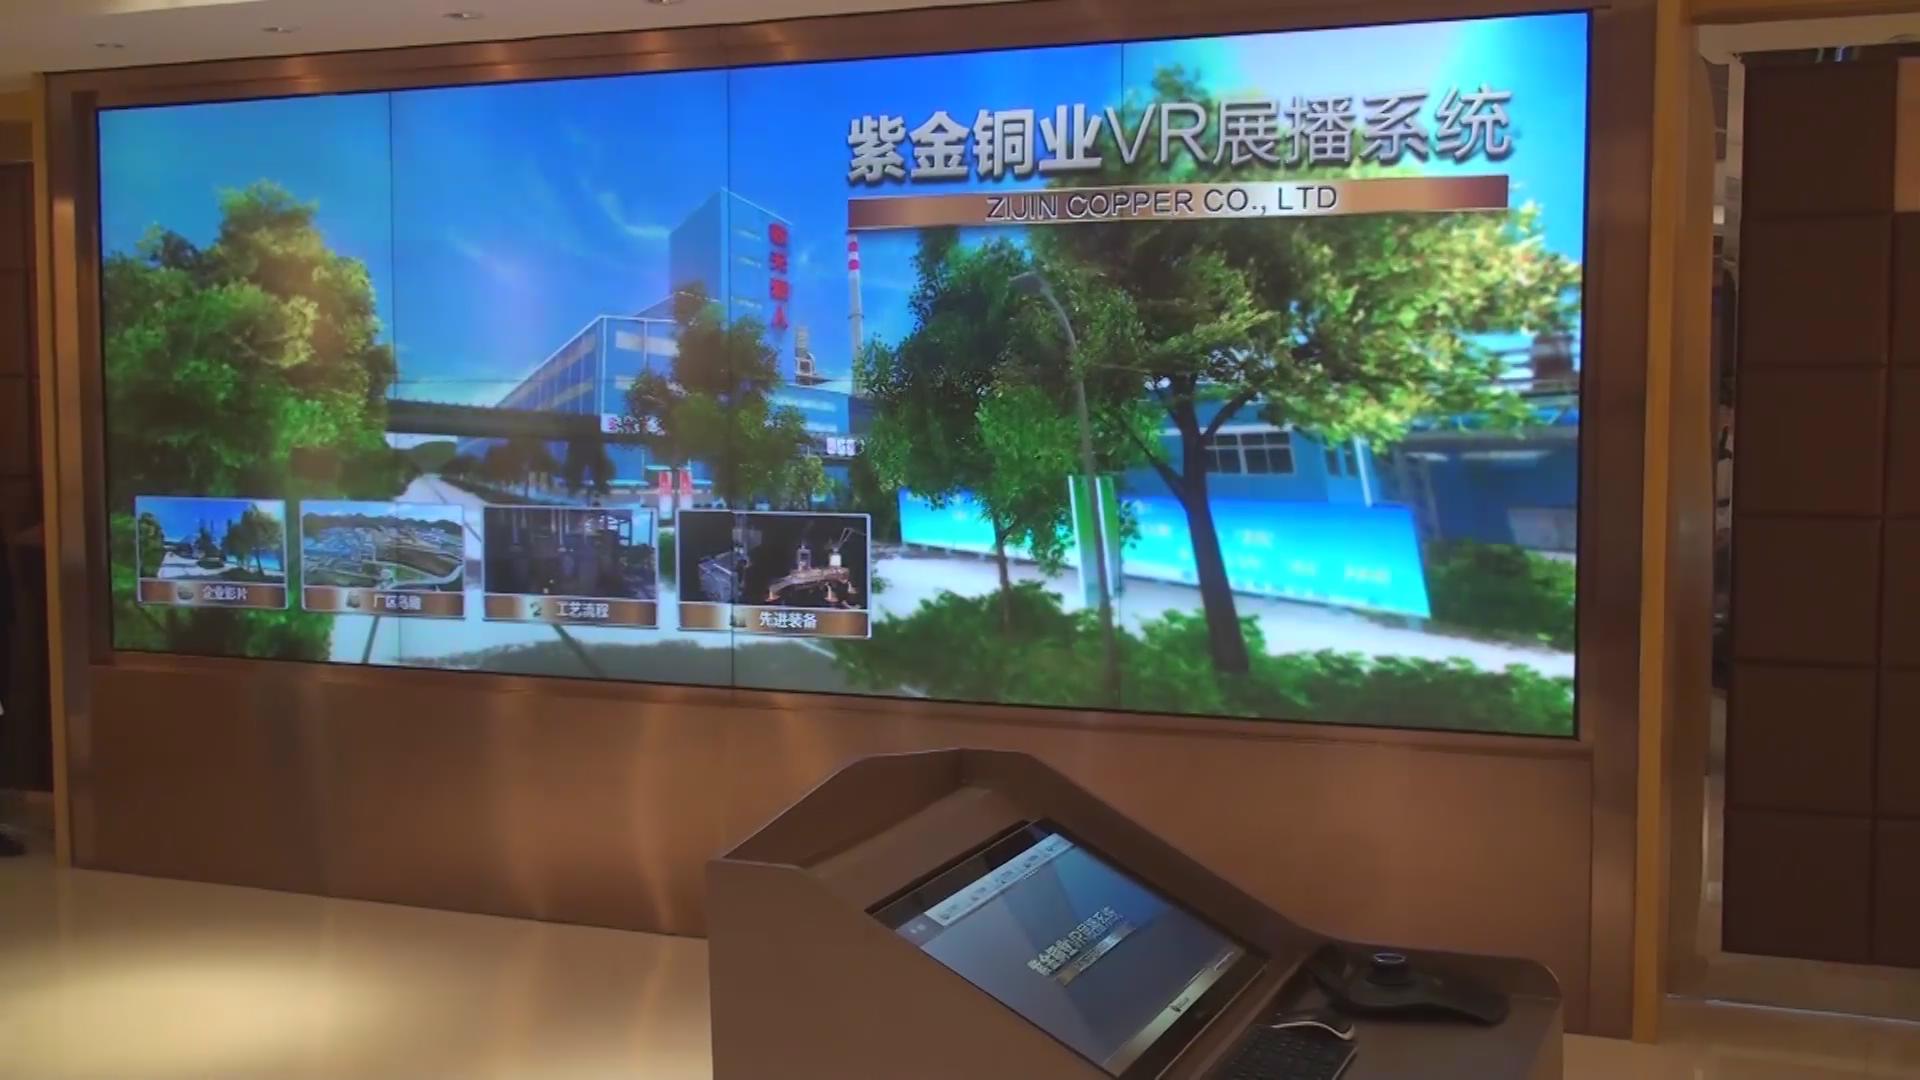 公司介绍配图-紫金铜业VR虚拟现实展示系统